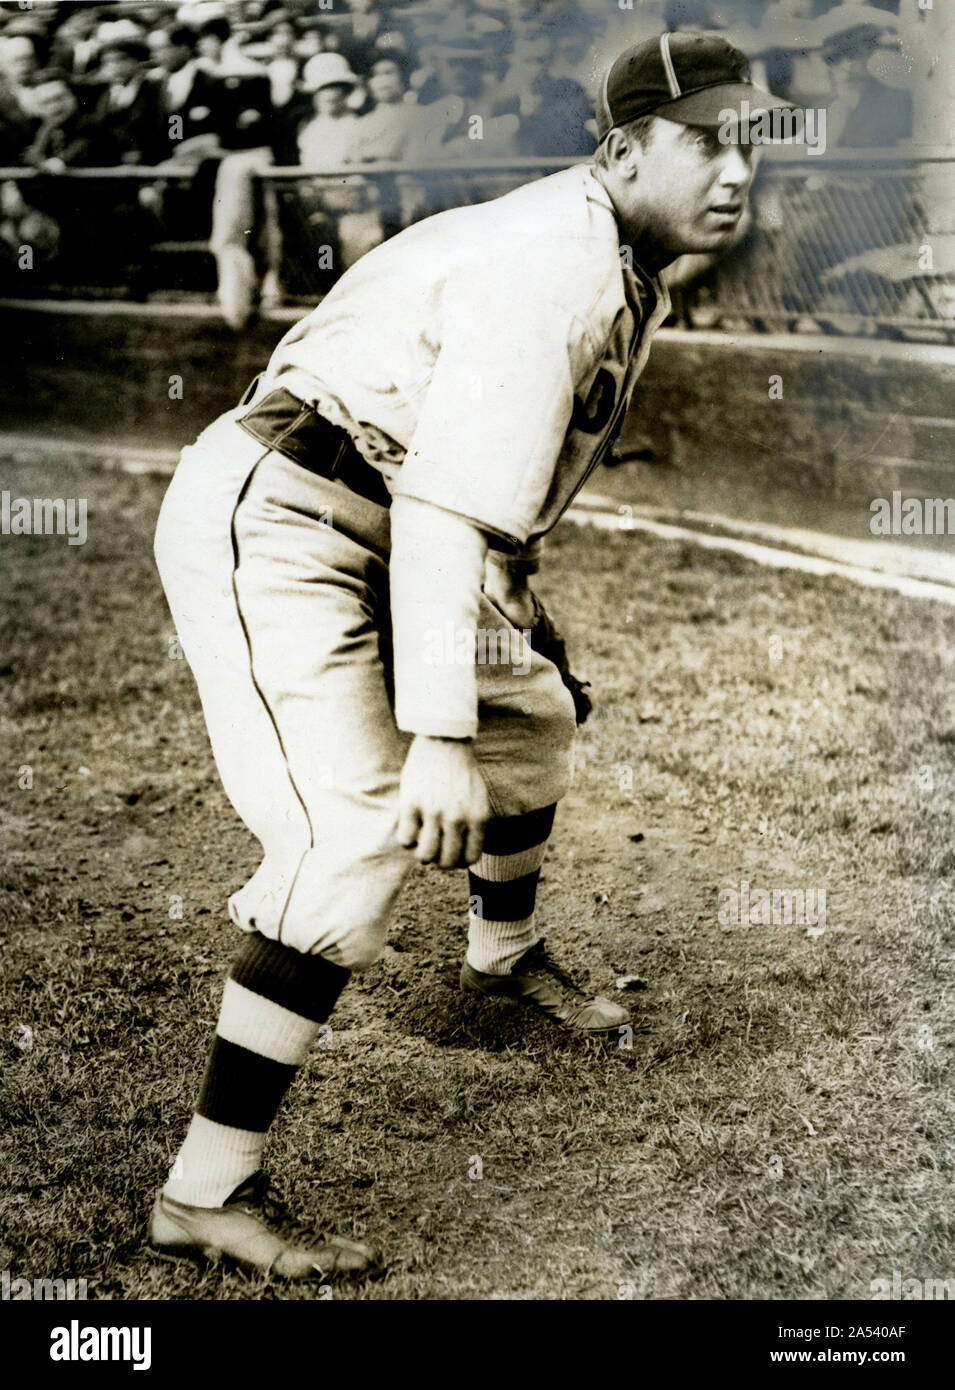 Vintage noir et blanc photo de joueur de baseball Van Lingle Mungo qui a joué pour les Dodgers de Brooklyn et les Giants de New York dans les années 30 et 40. Banque D'Images